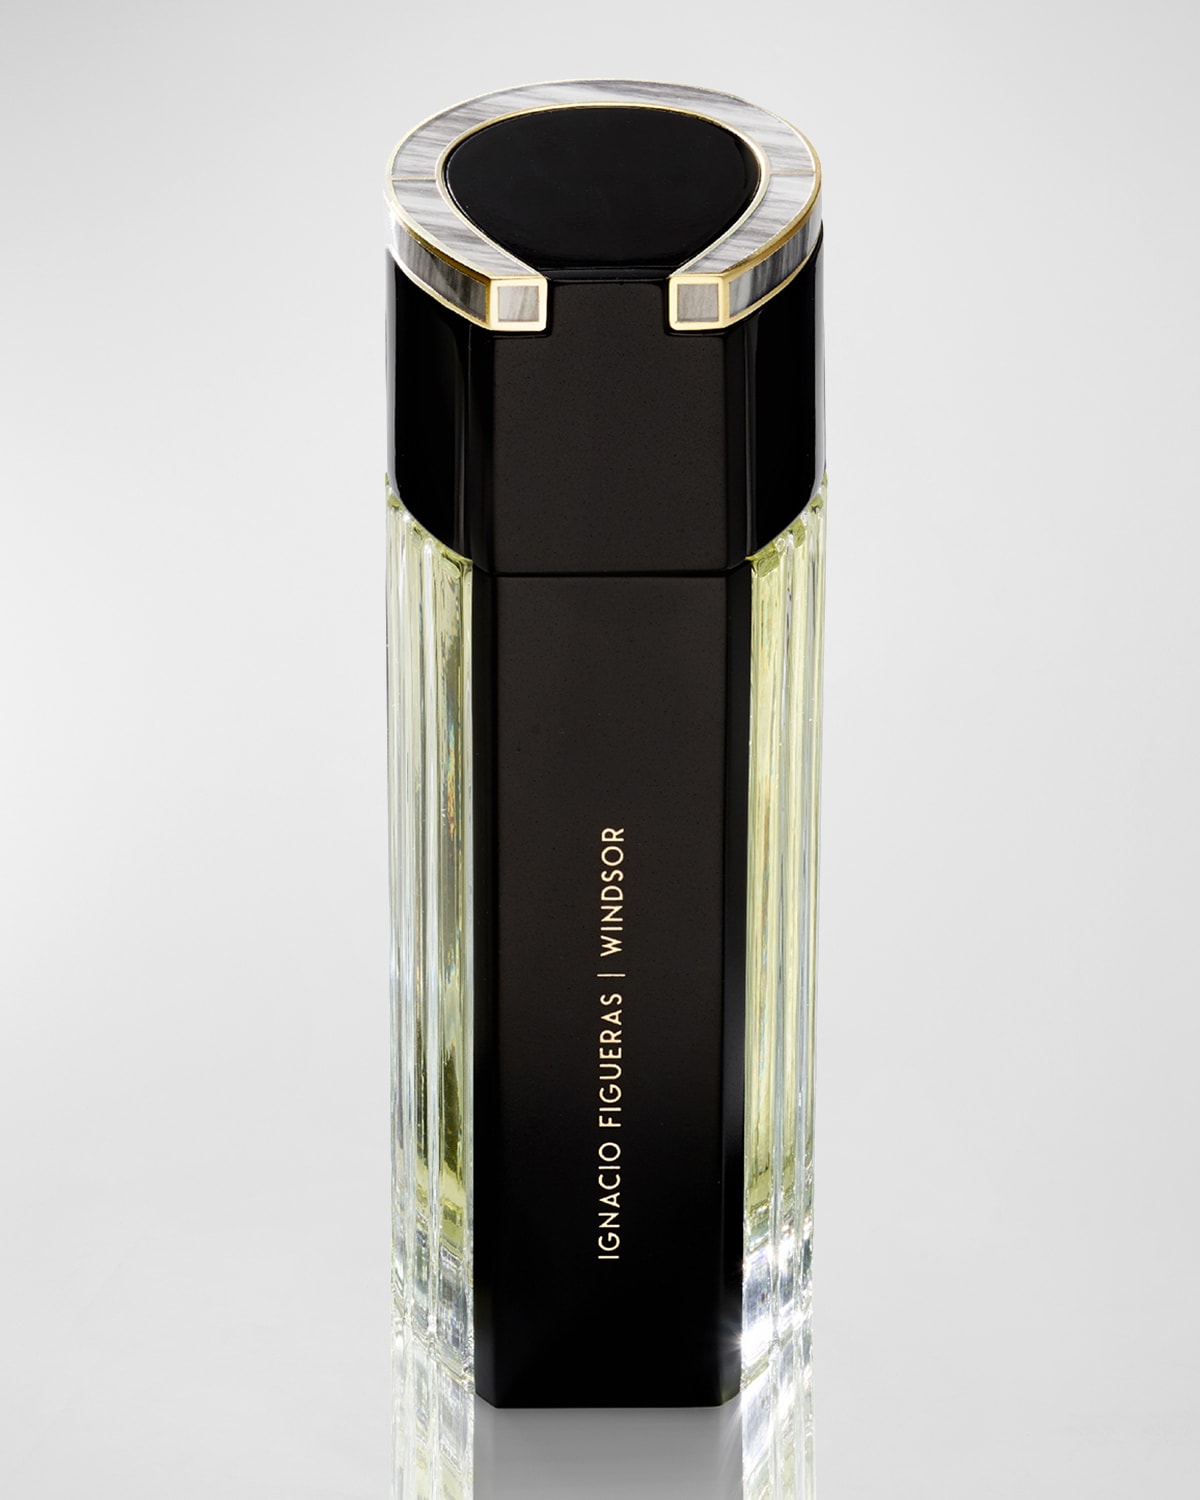 Ignacio Figueras Windsor Eau de Parfum Spray, 3.4 oz./ 100 mL